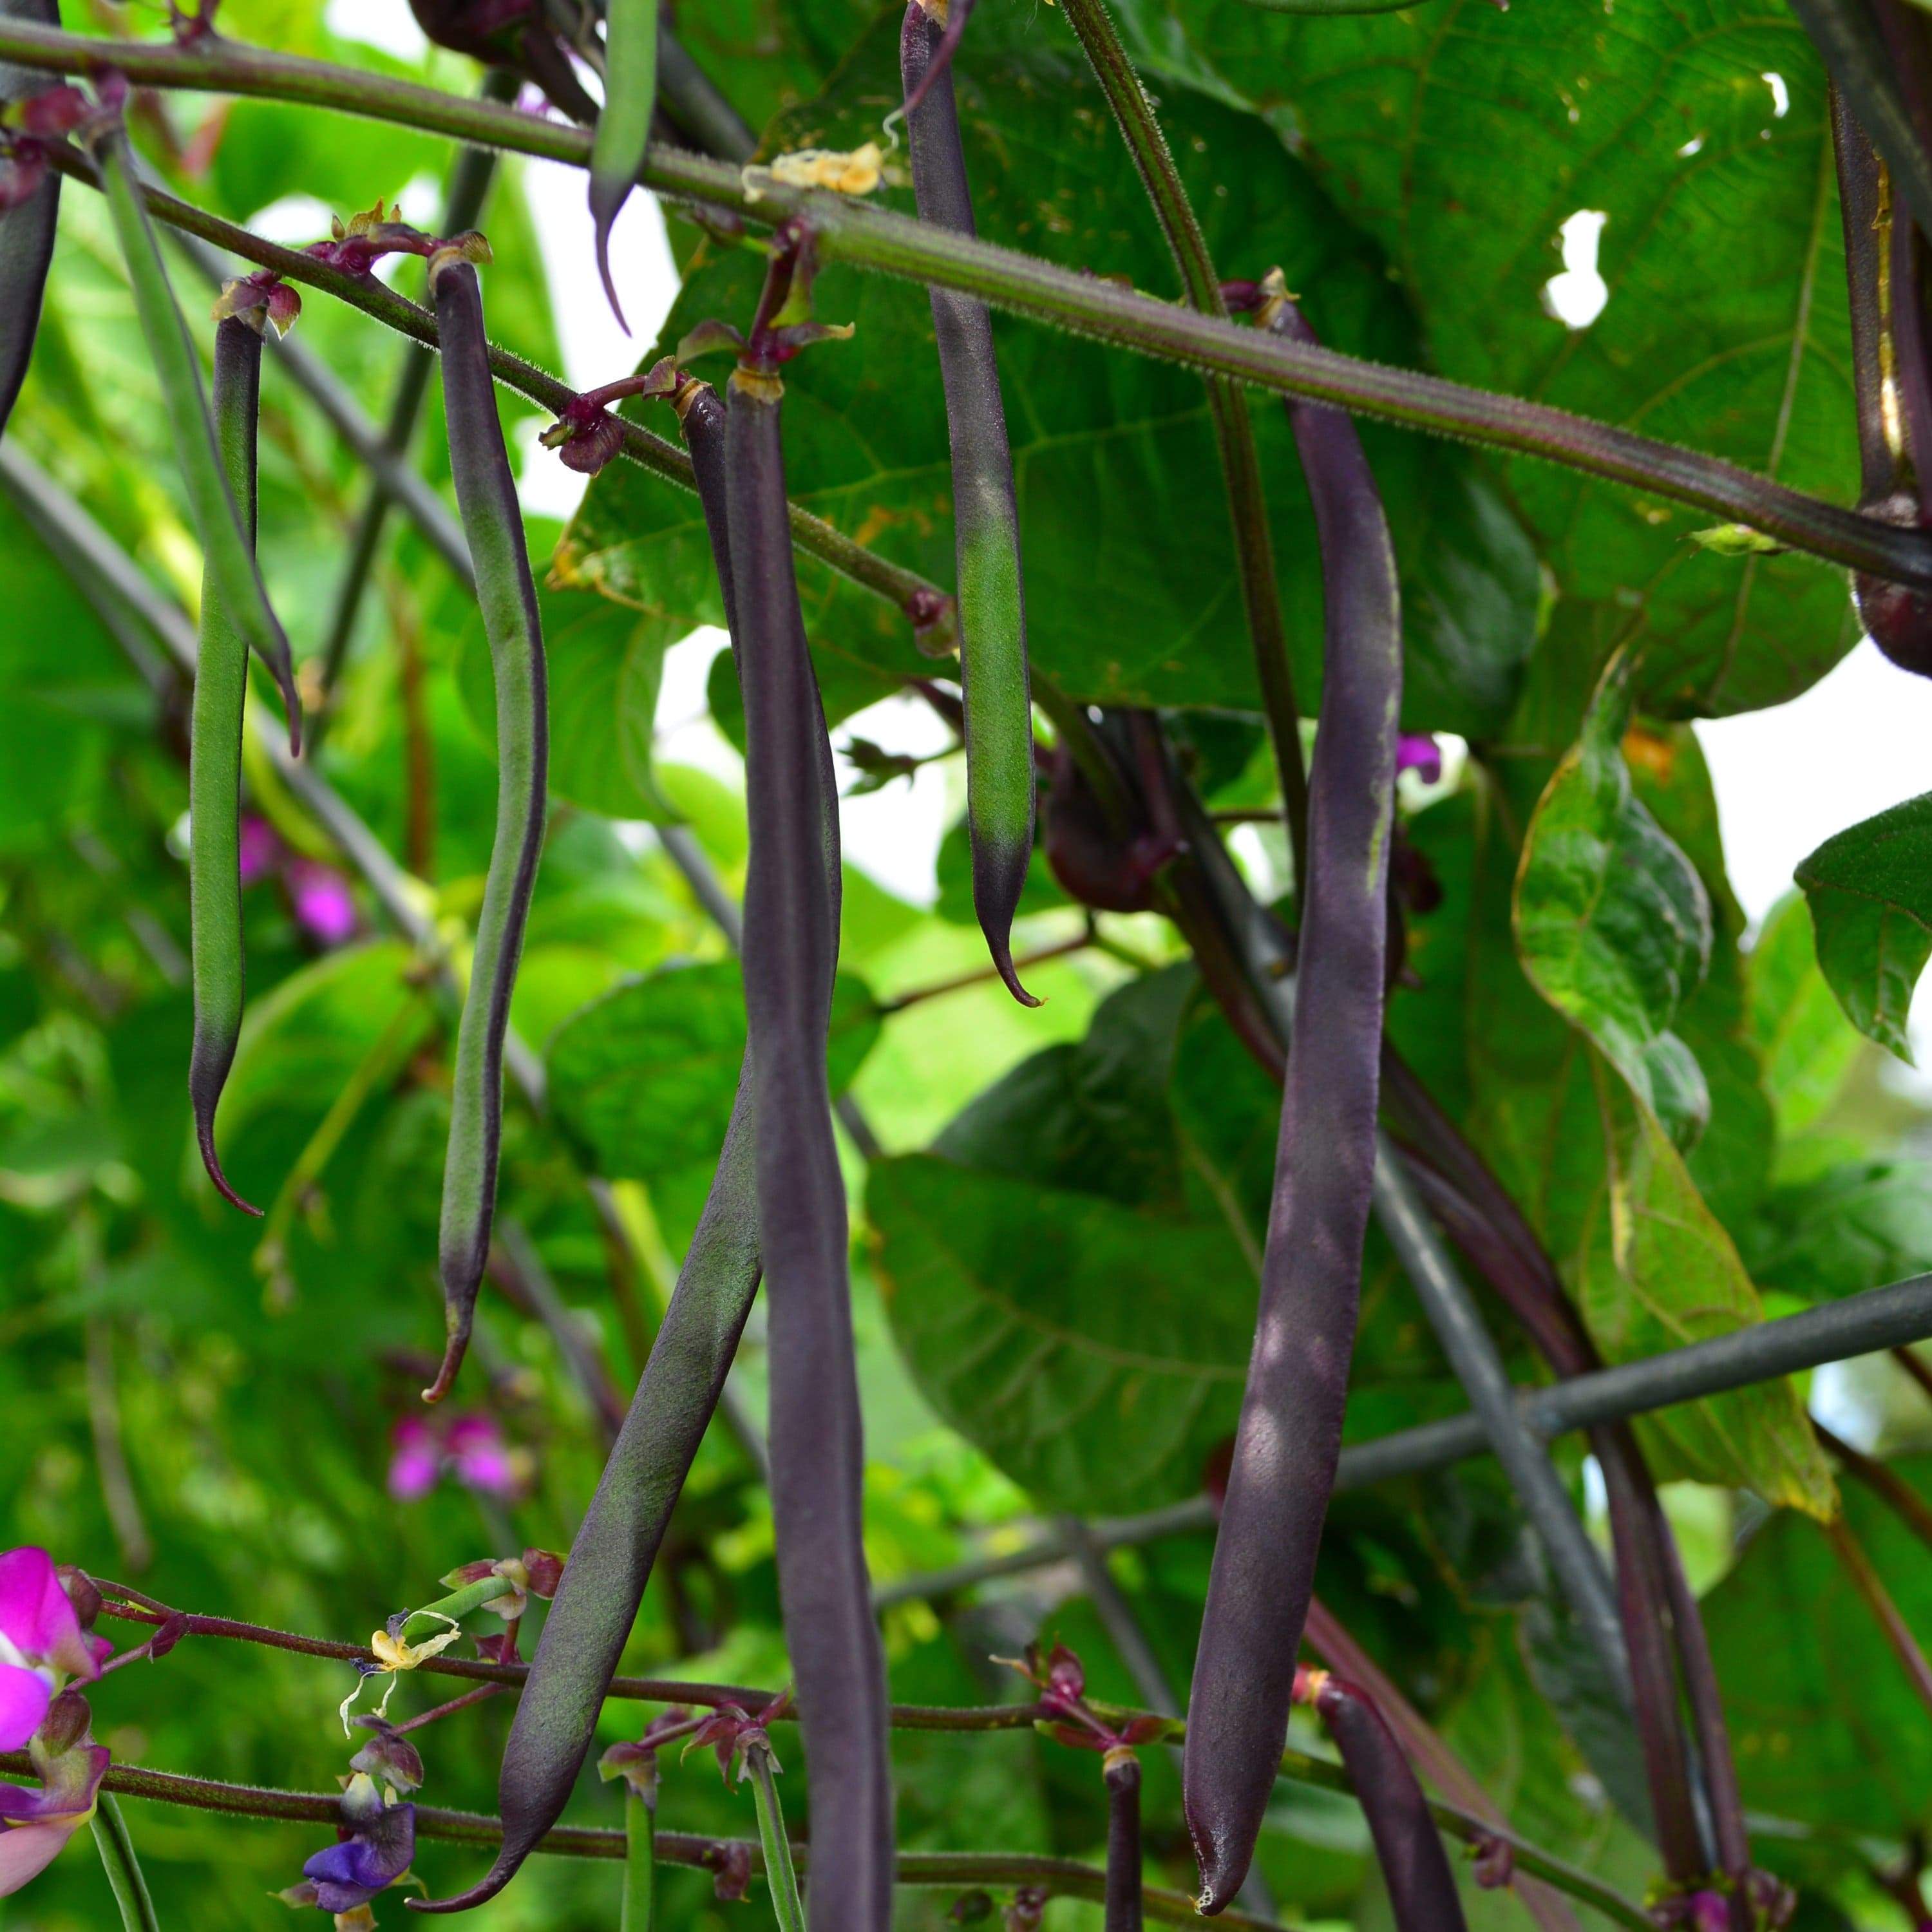 Purple Podded Pole Snap Bean growing in garden